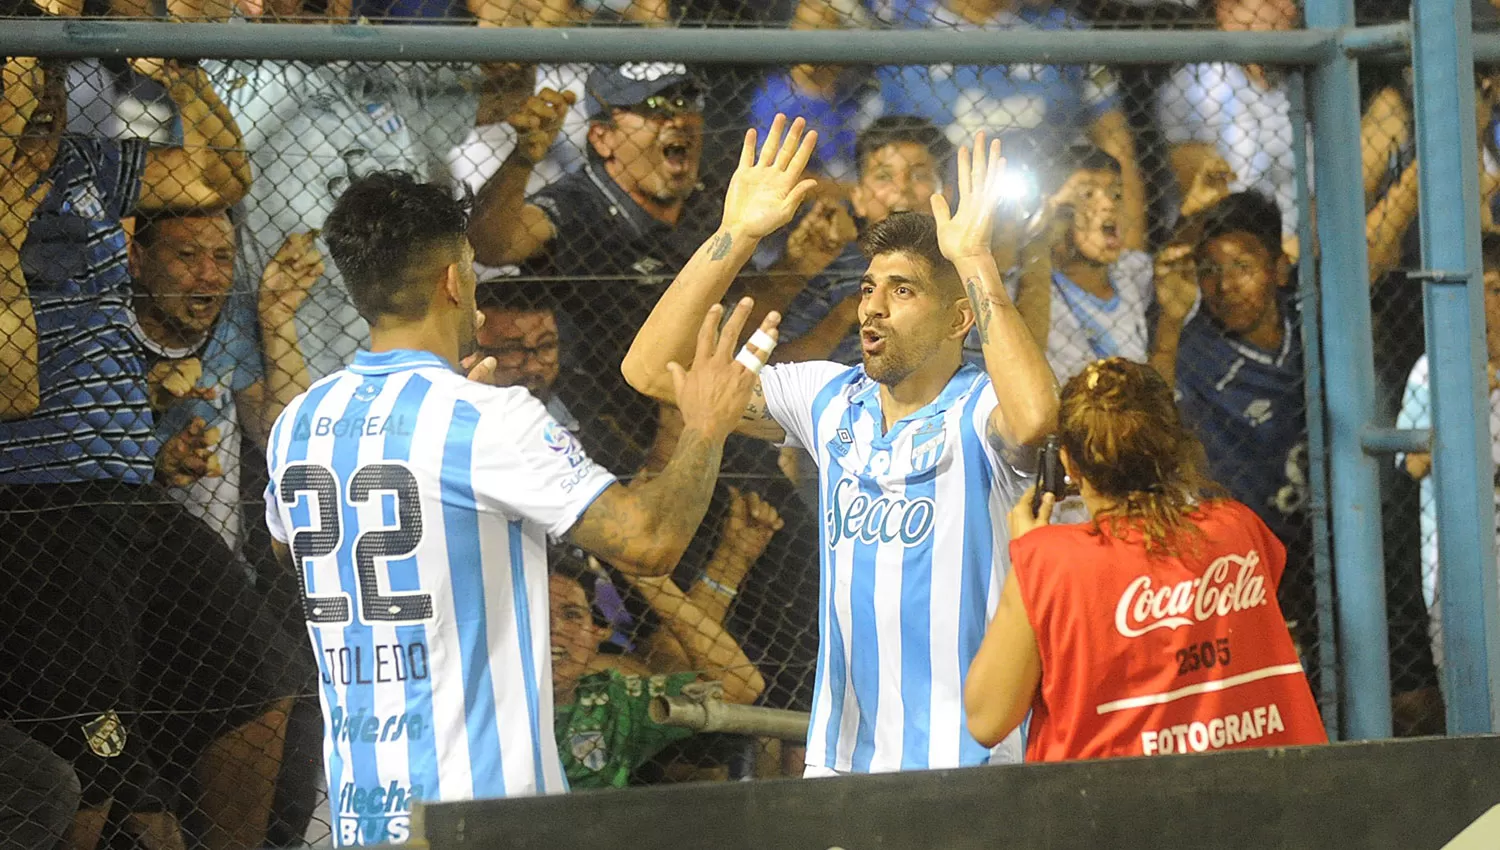 DUPLA OFENSIVA. Díaz y Toledo festejaron el gol que sentenció el partido. LA GACETA/FOTO DE HÉCTOR PERALTA